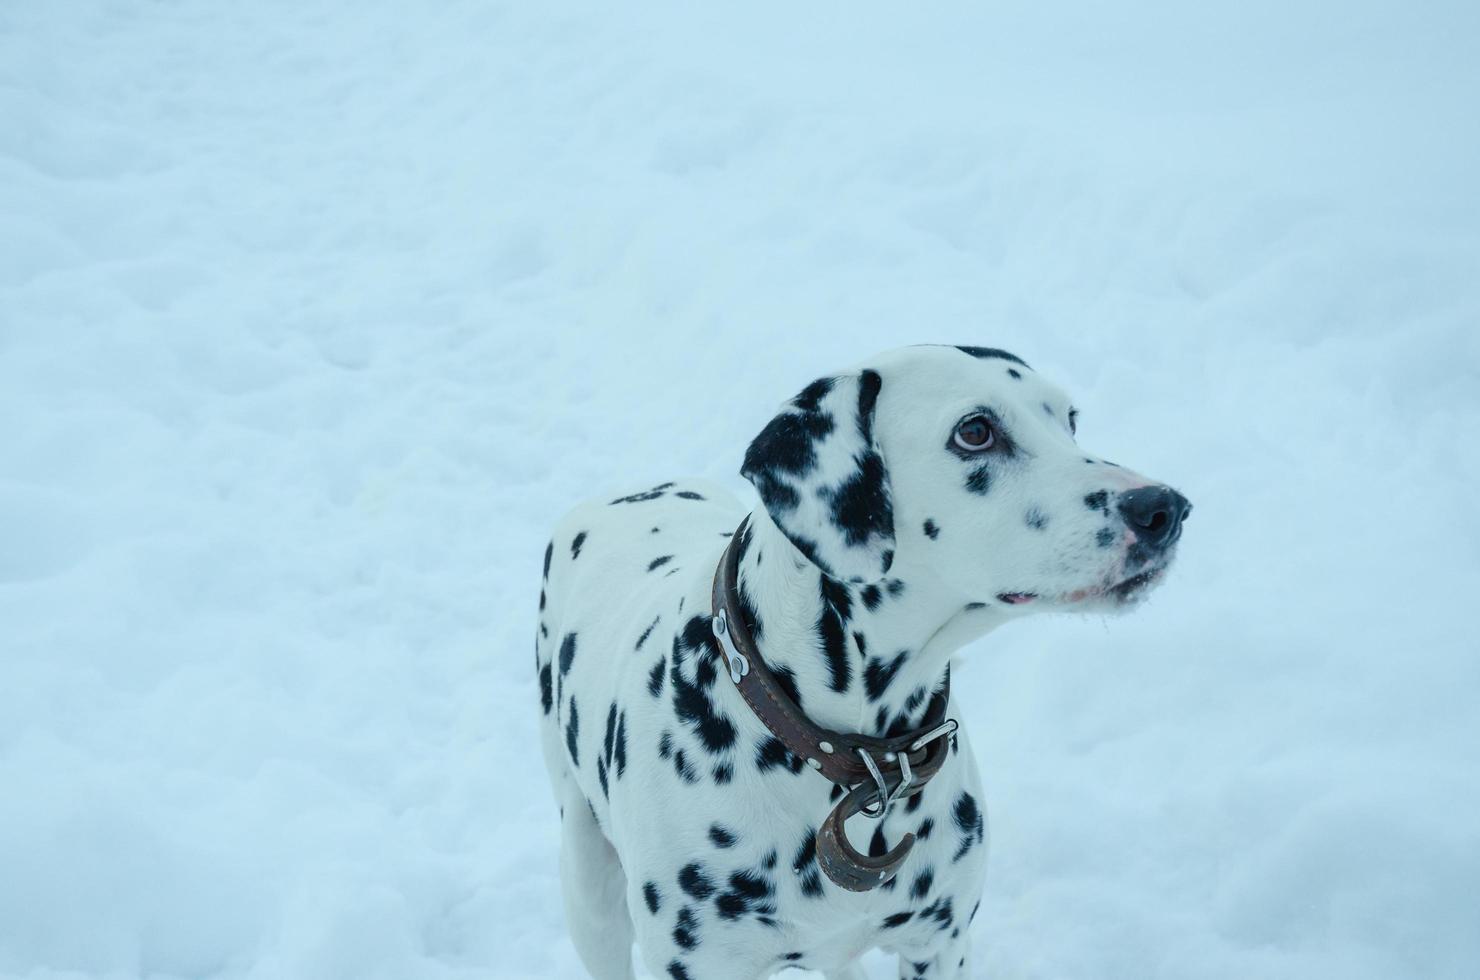 Hund Dalmatiner weiß in schwarzen Flecken im Winter auf weißem Schnee foto